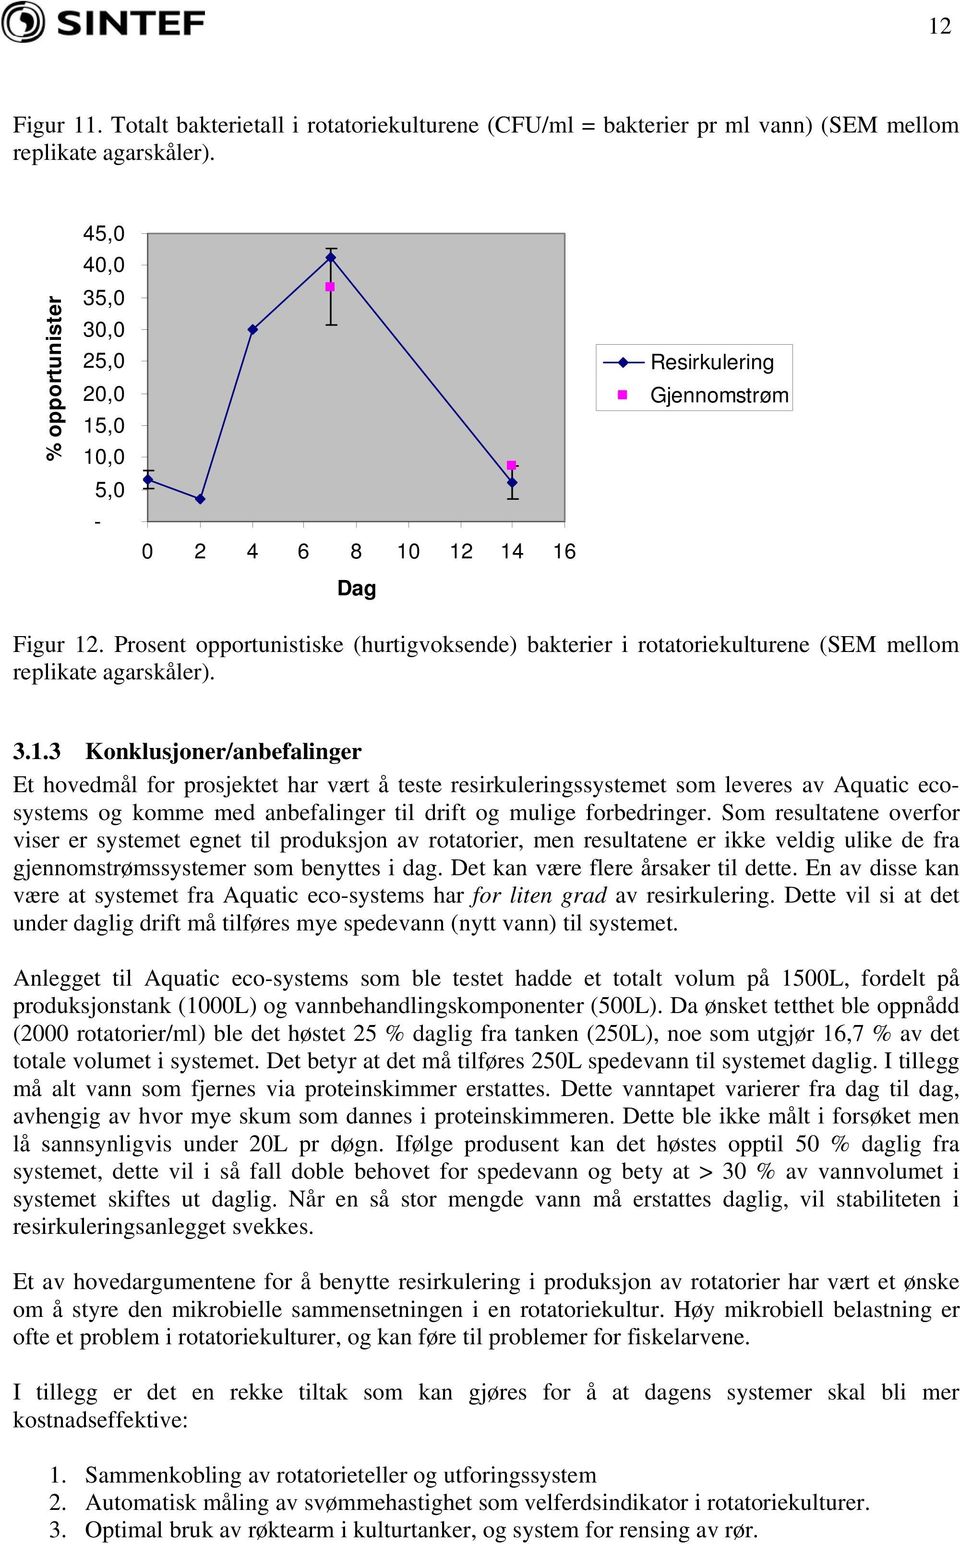 Prosent opportunistiske (hurtigvoksende) bakterier i rotatoriekulturene (SEM mellom replikate agarskåler). 3.1.